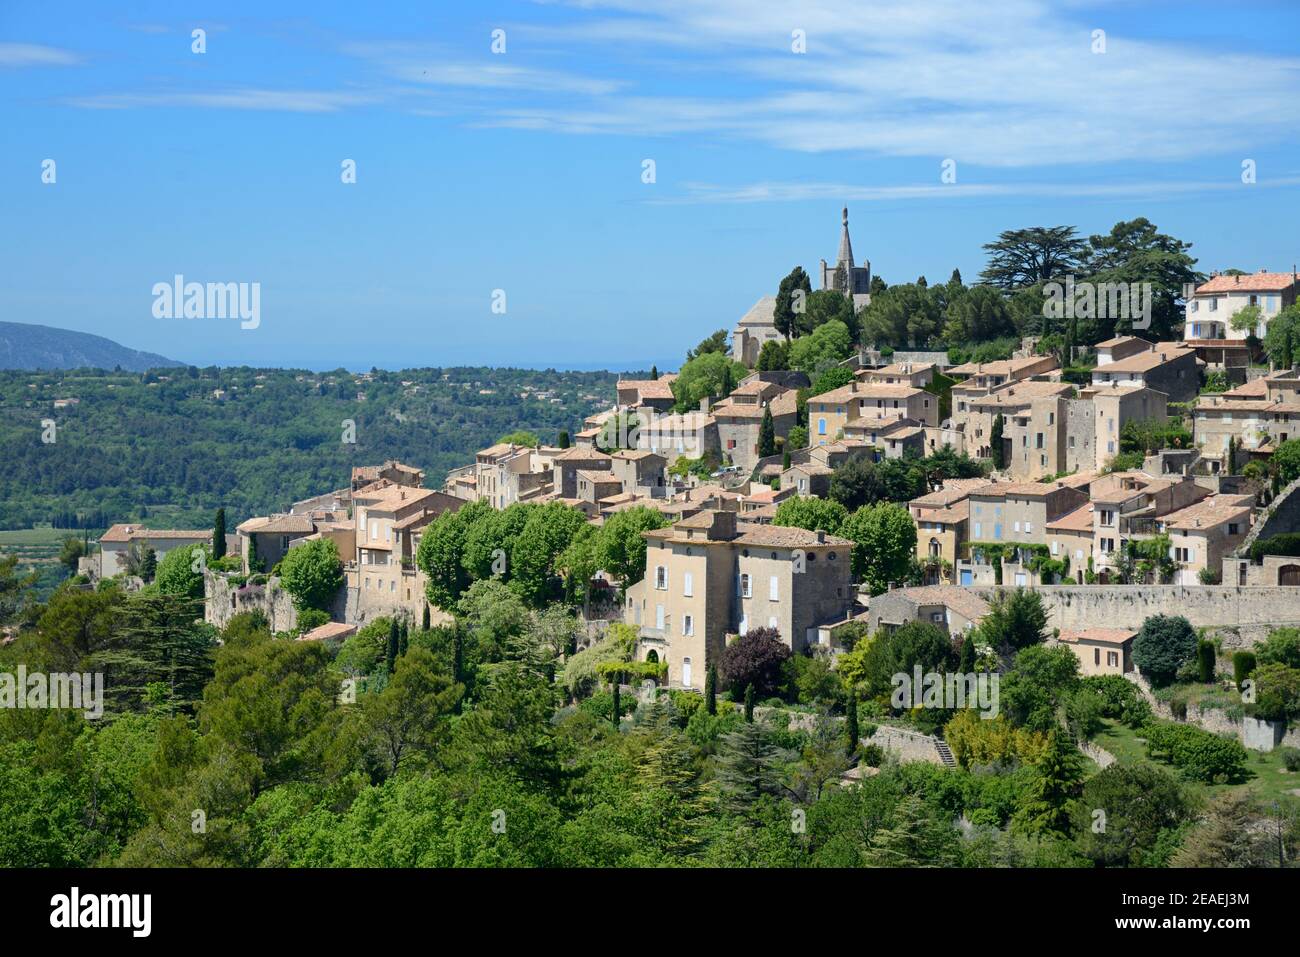 Vue panoramique sur le village perché de Bonnieux dans le Parc régional du Luberon, ou Parc naturel régional du Luberon, Vaucluse Provence France Banque D'Images